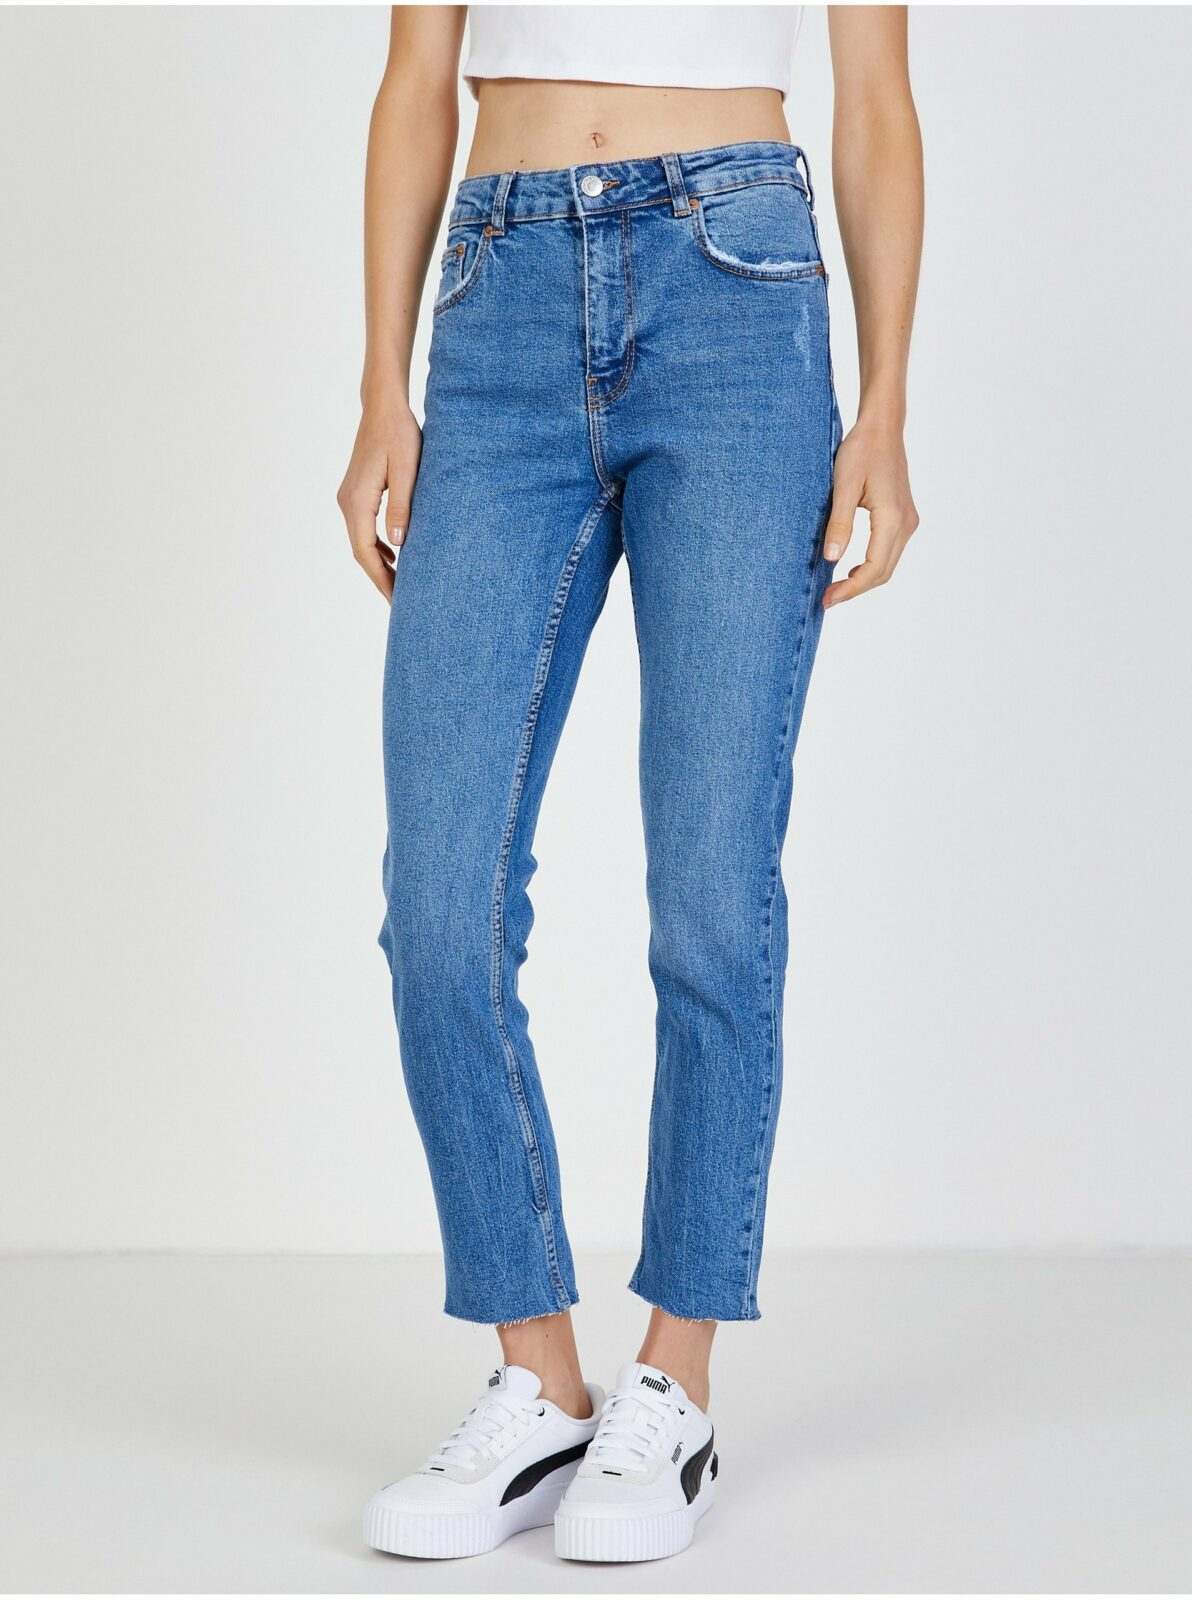 Modré dámské zkrácené slim fit džíny